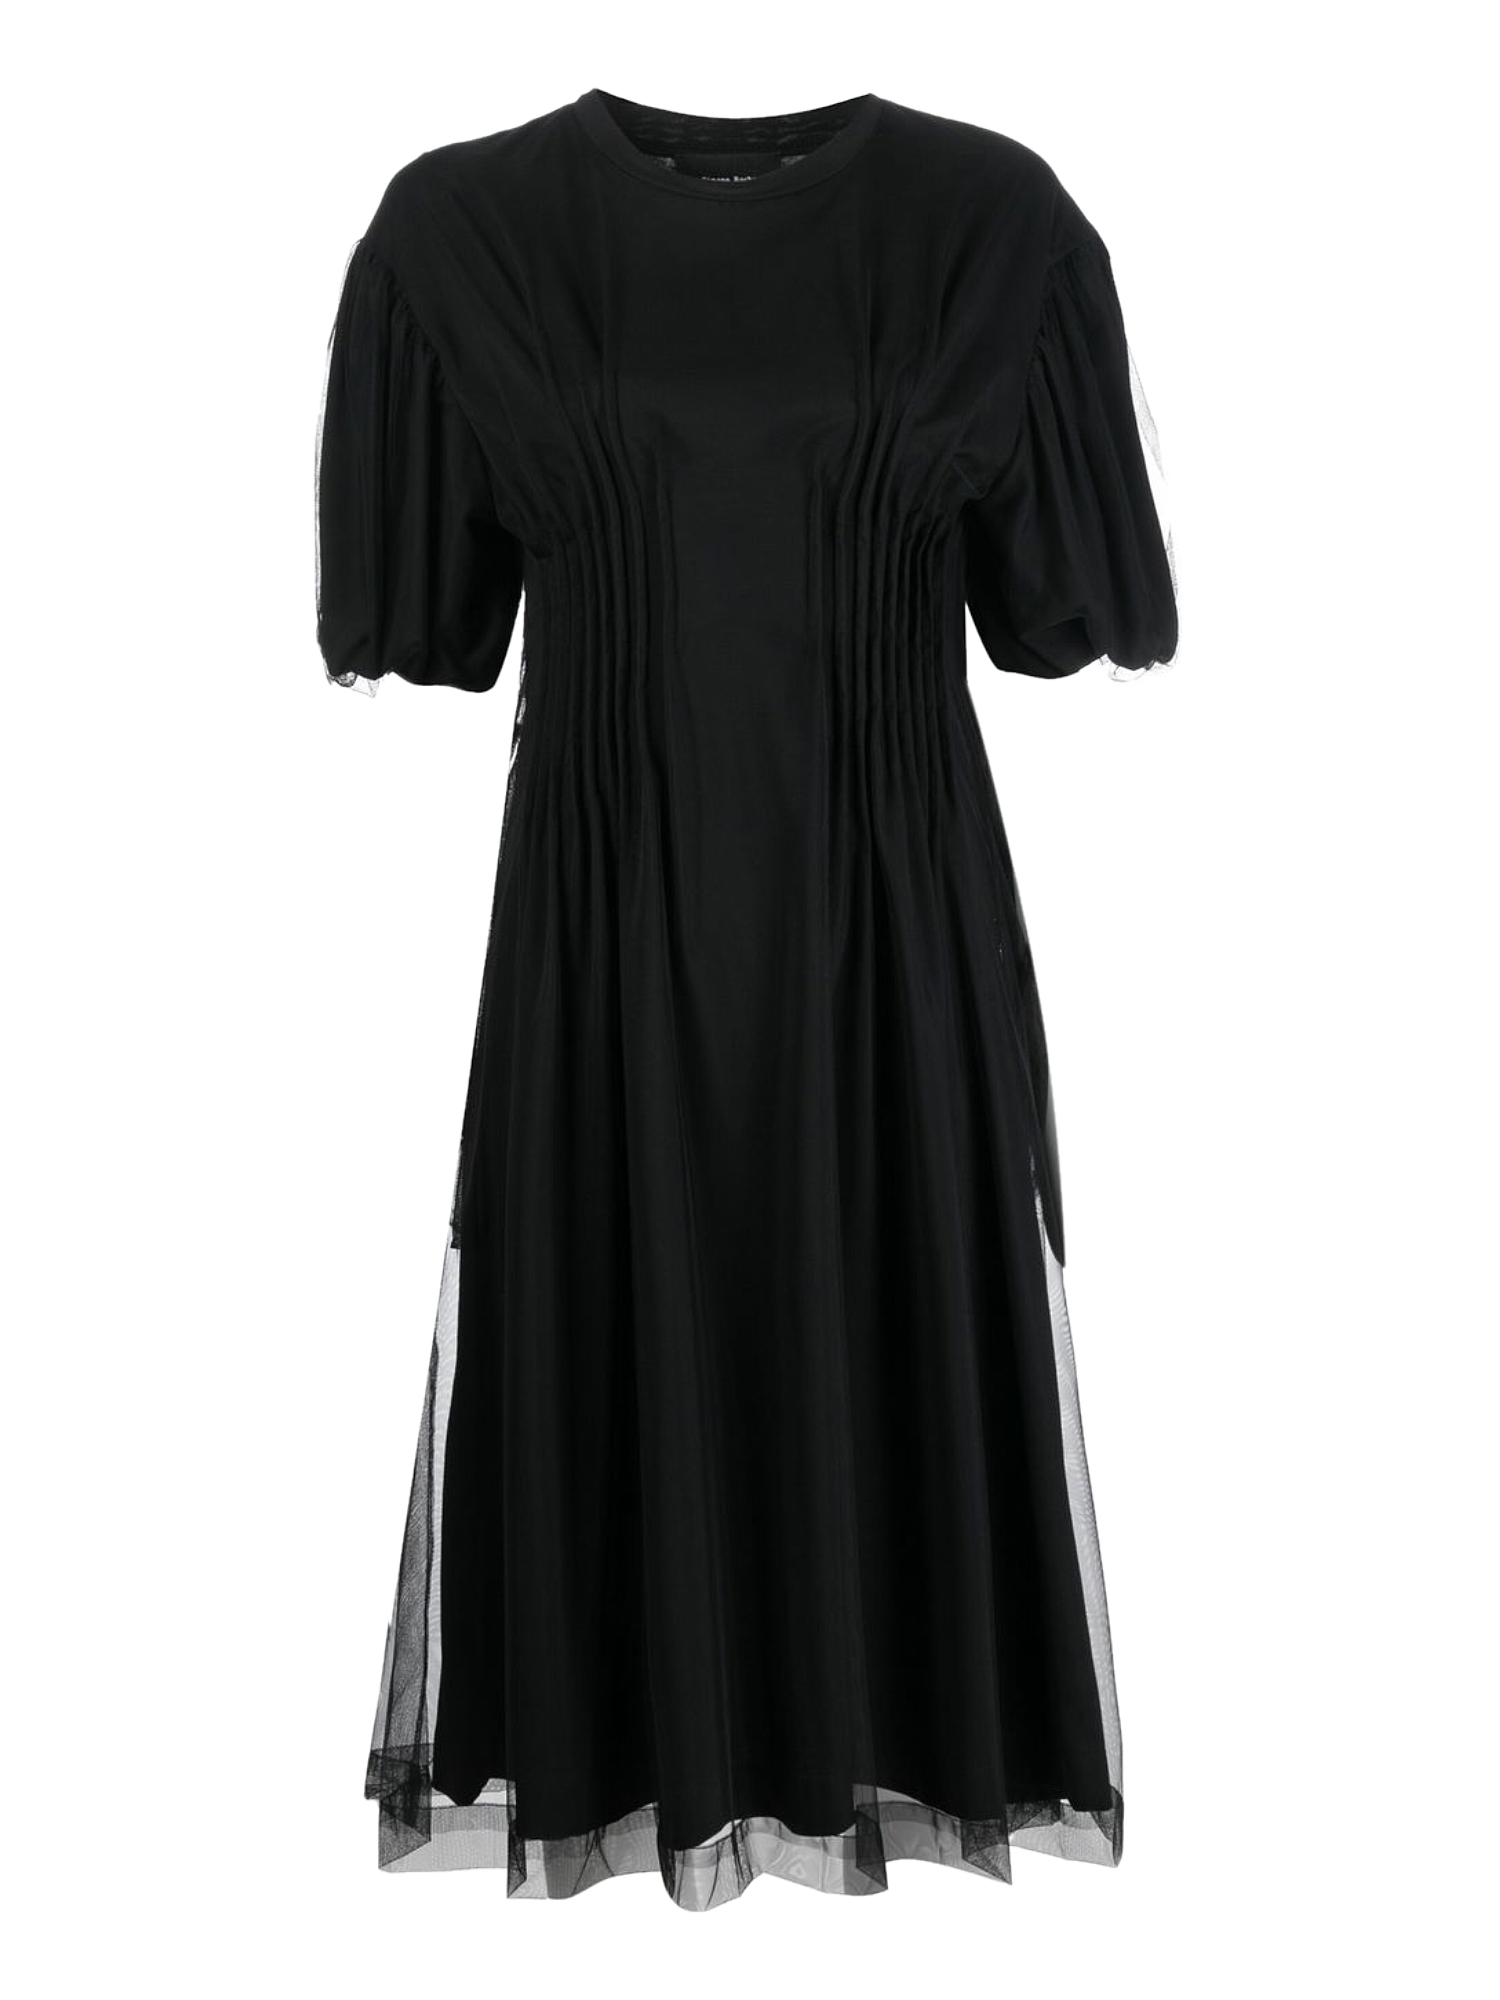 Robes Pour Femme - Simone Rocha - En Cotton Black - Taille:  -